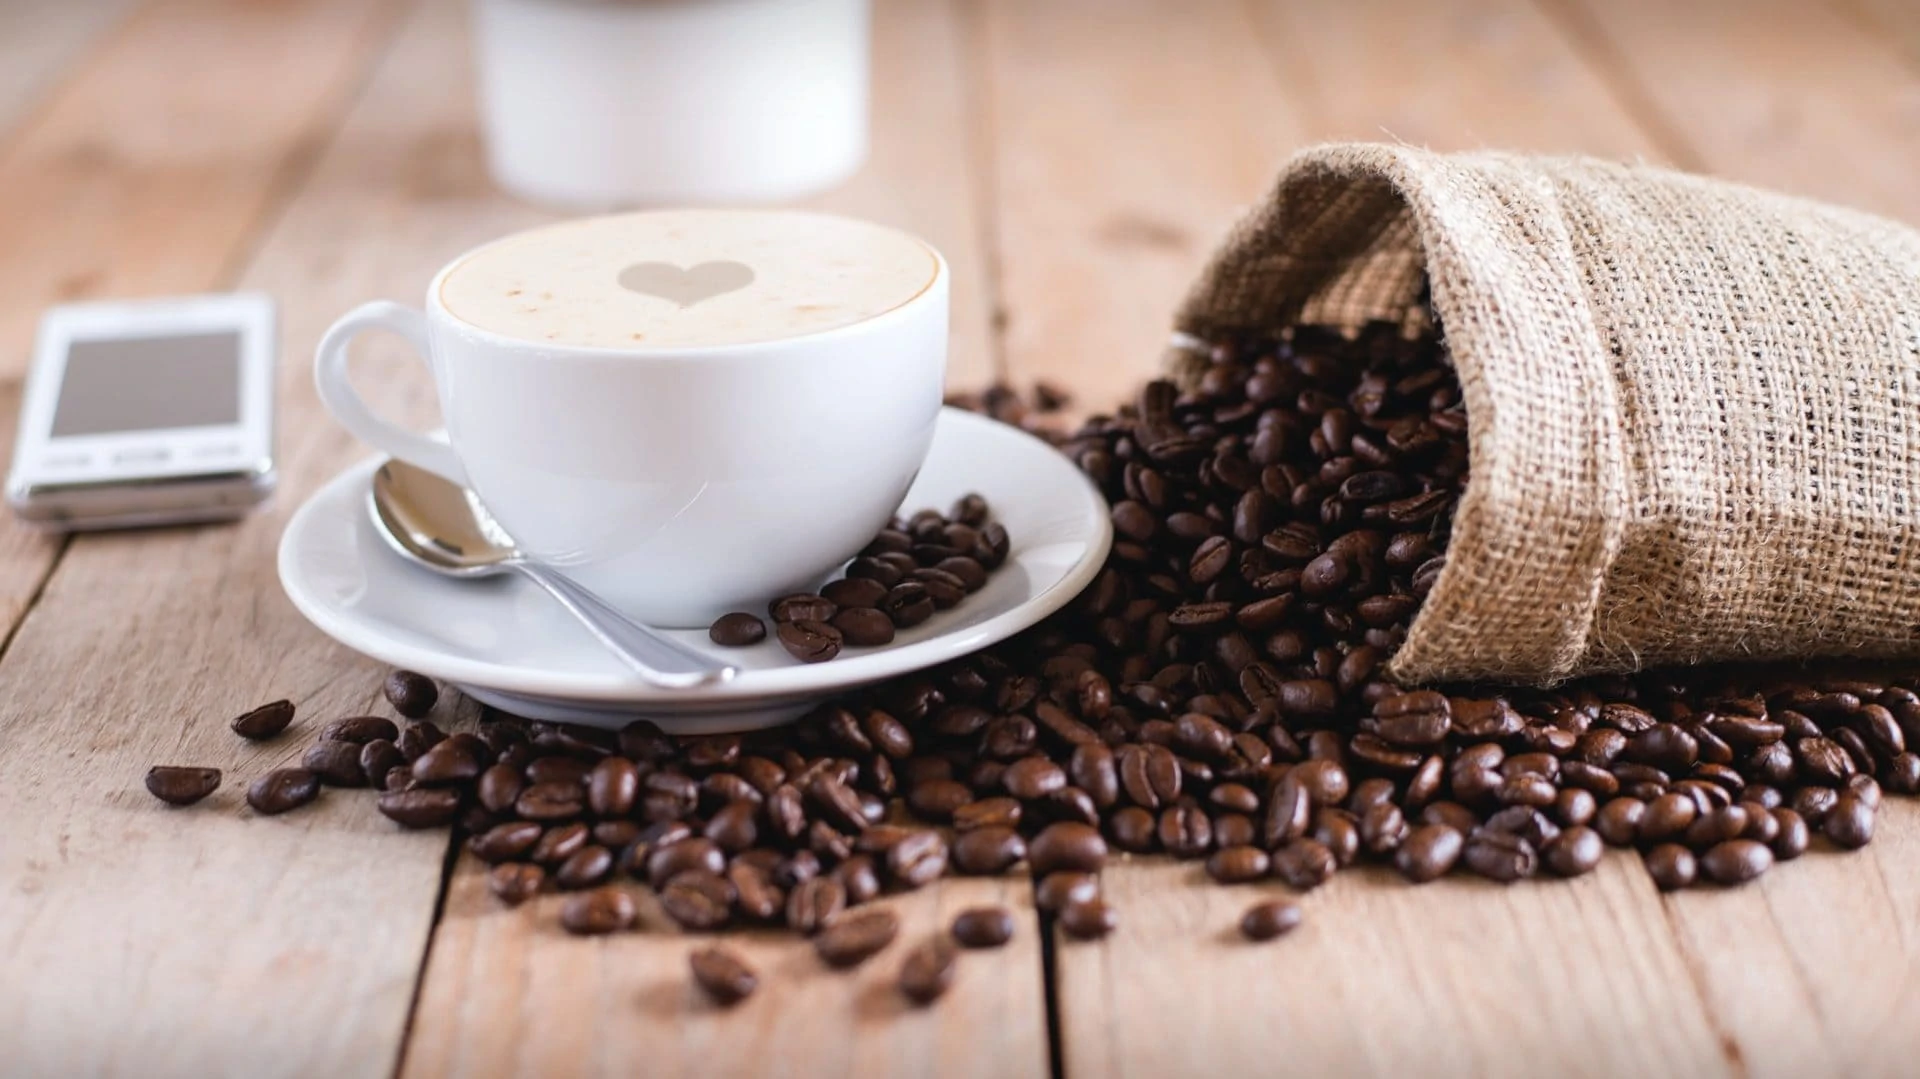 Kop koffie met zak bonen ernaast, op houten ondergrond. Vooraanzicht